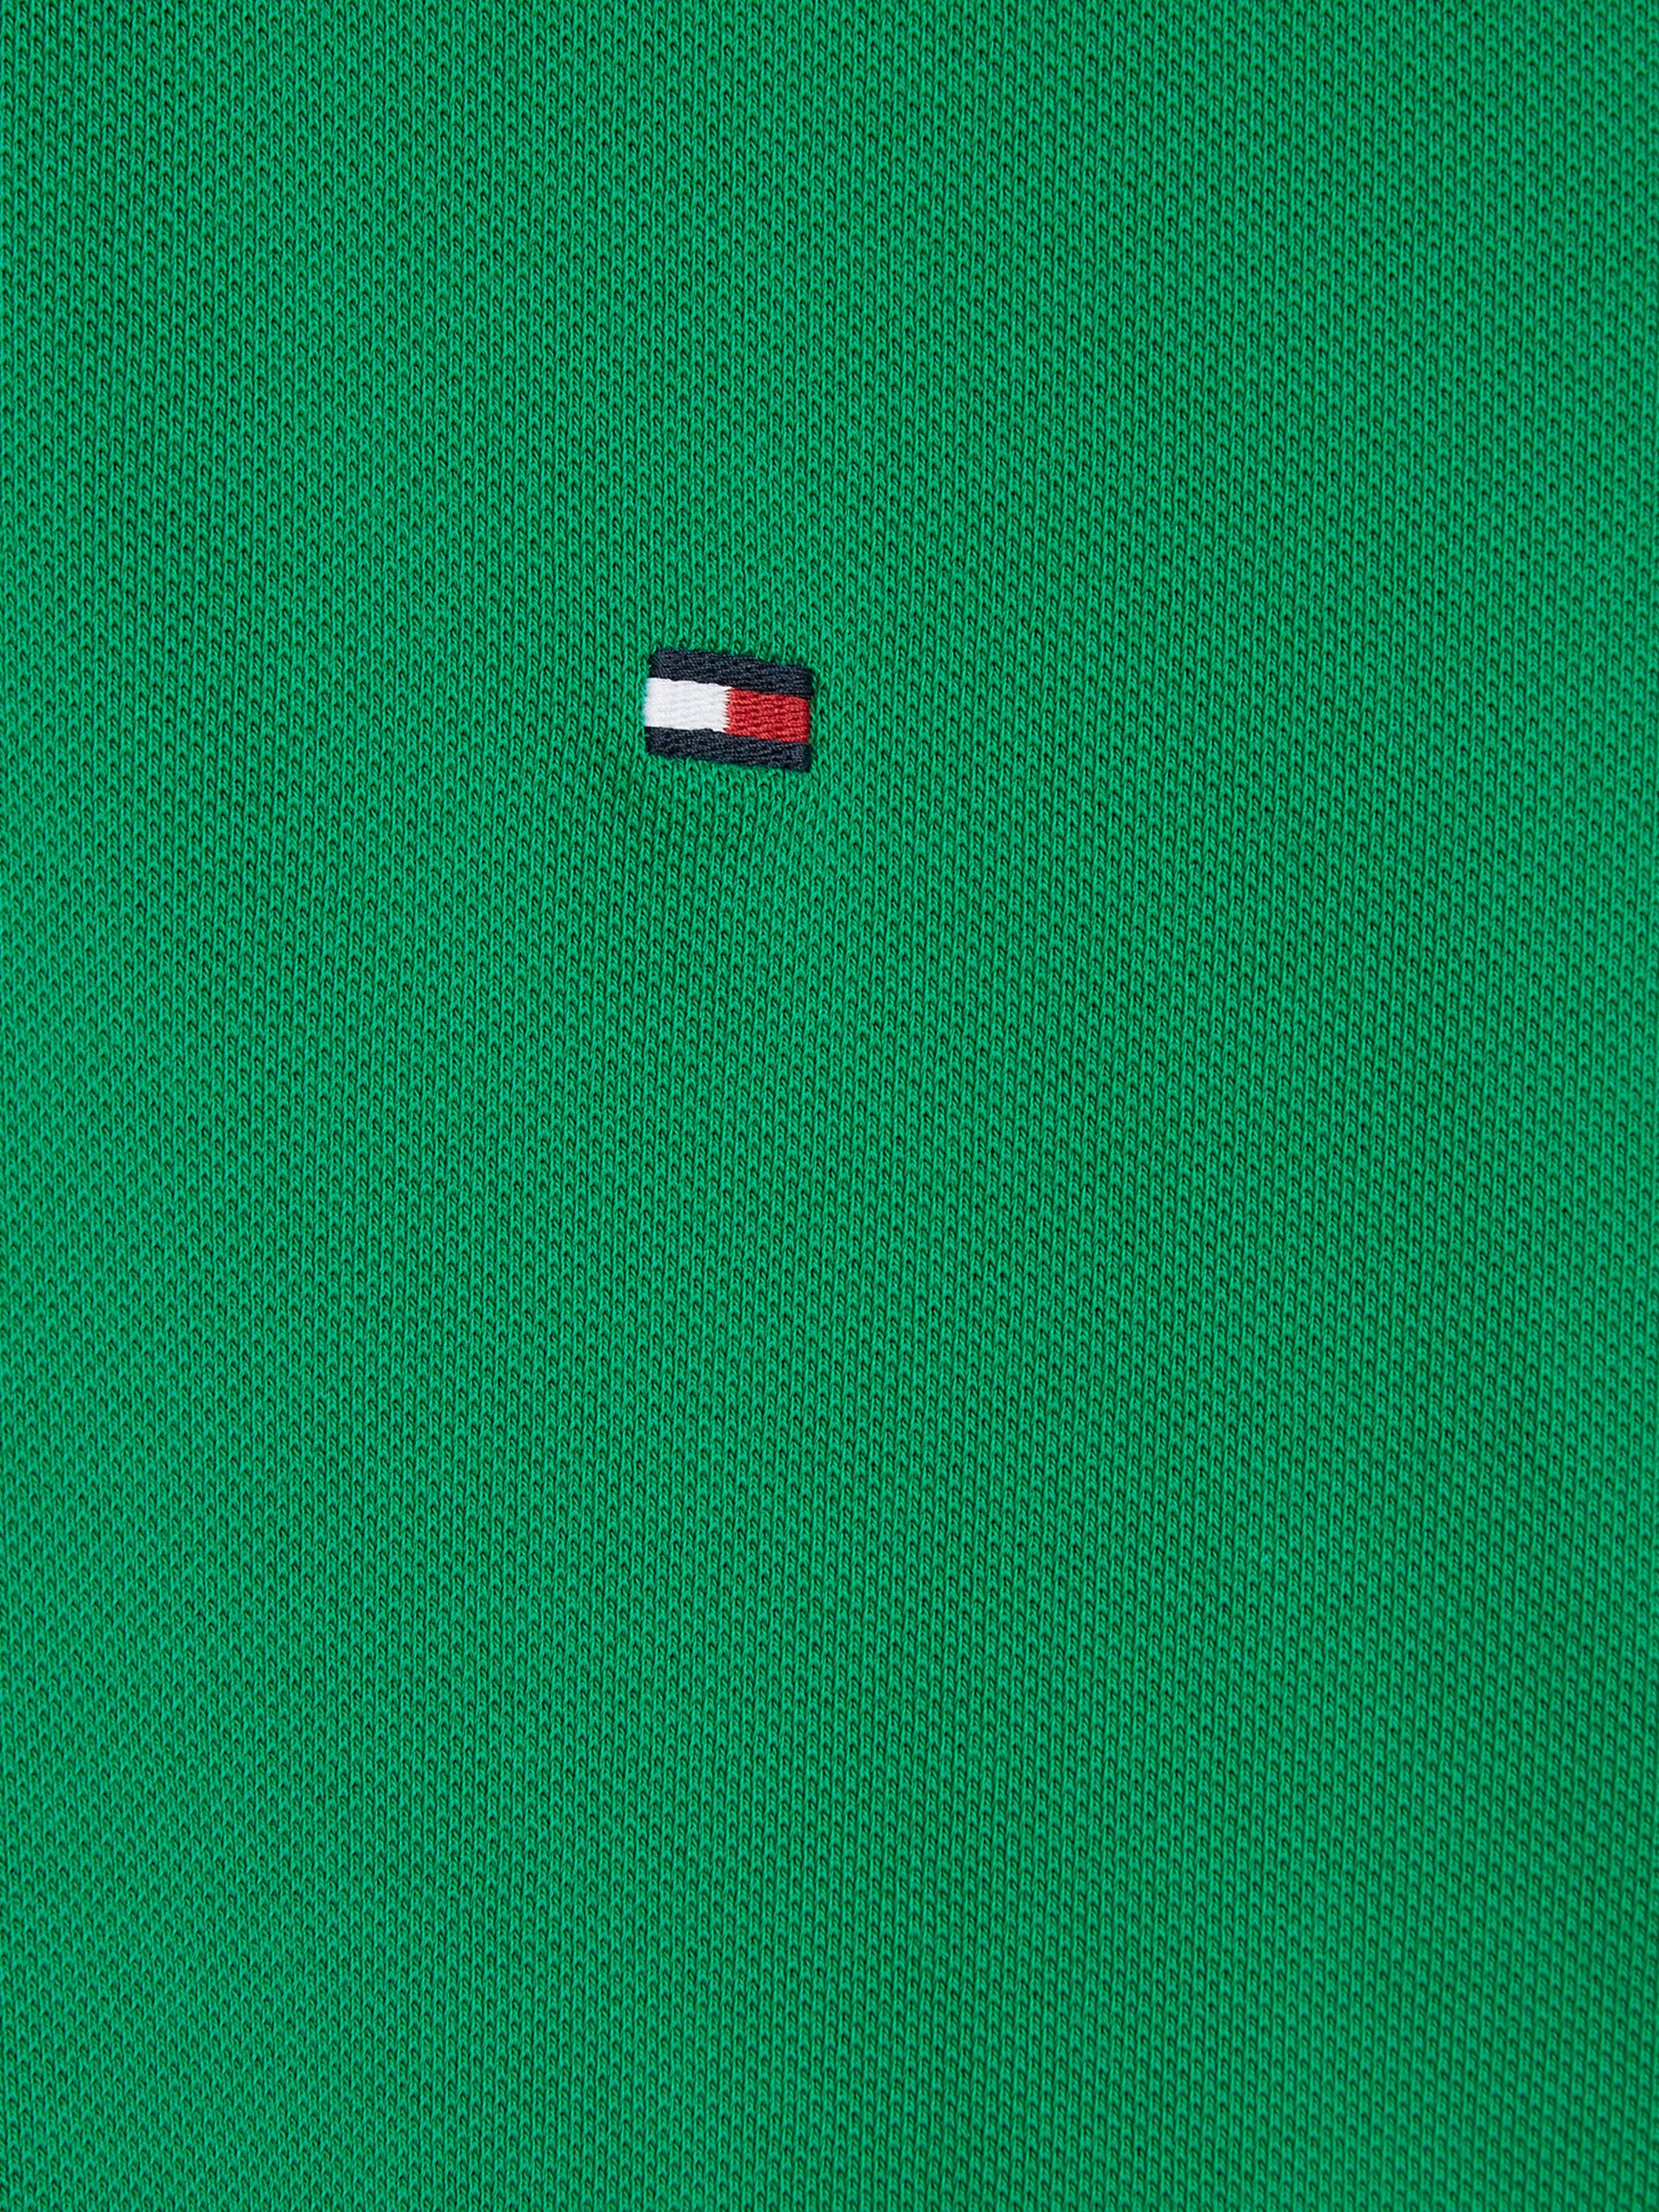 Hilfiger Green mit Poloshirt 1985 REGULAR Kragen POLO Kontraststreifen am Tommy Hilfiger Olympic innen Tommy